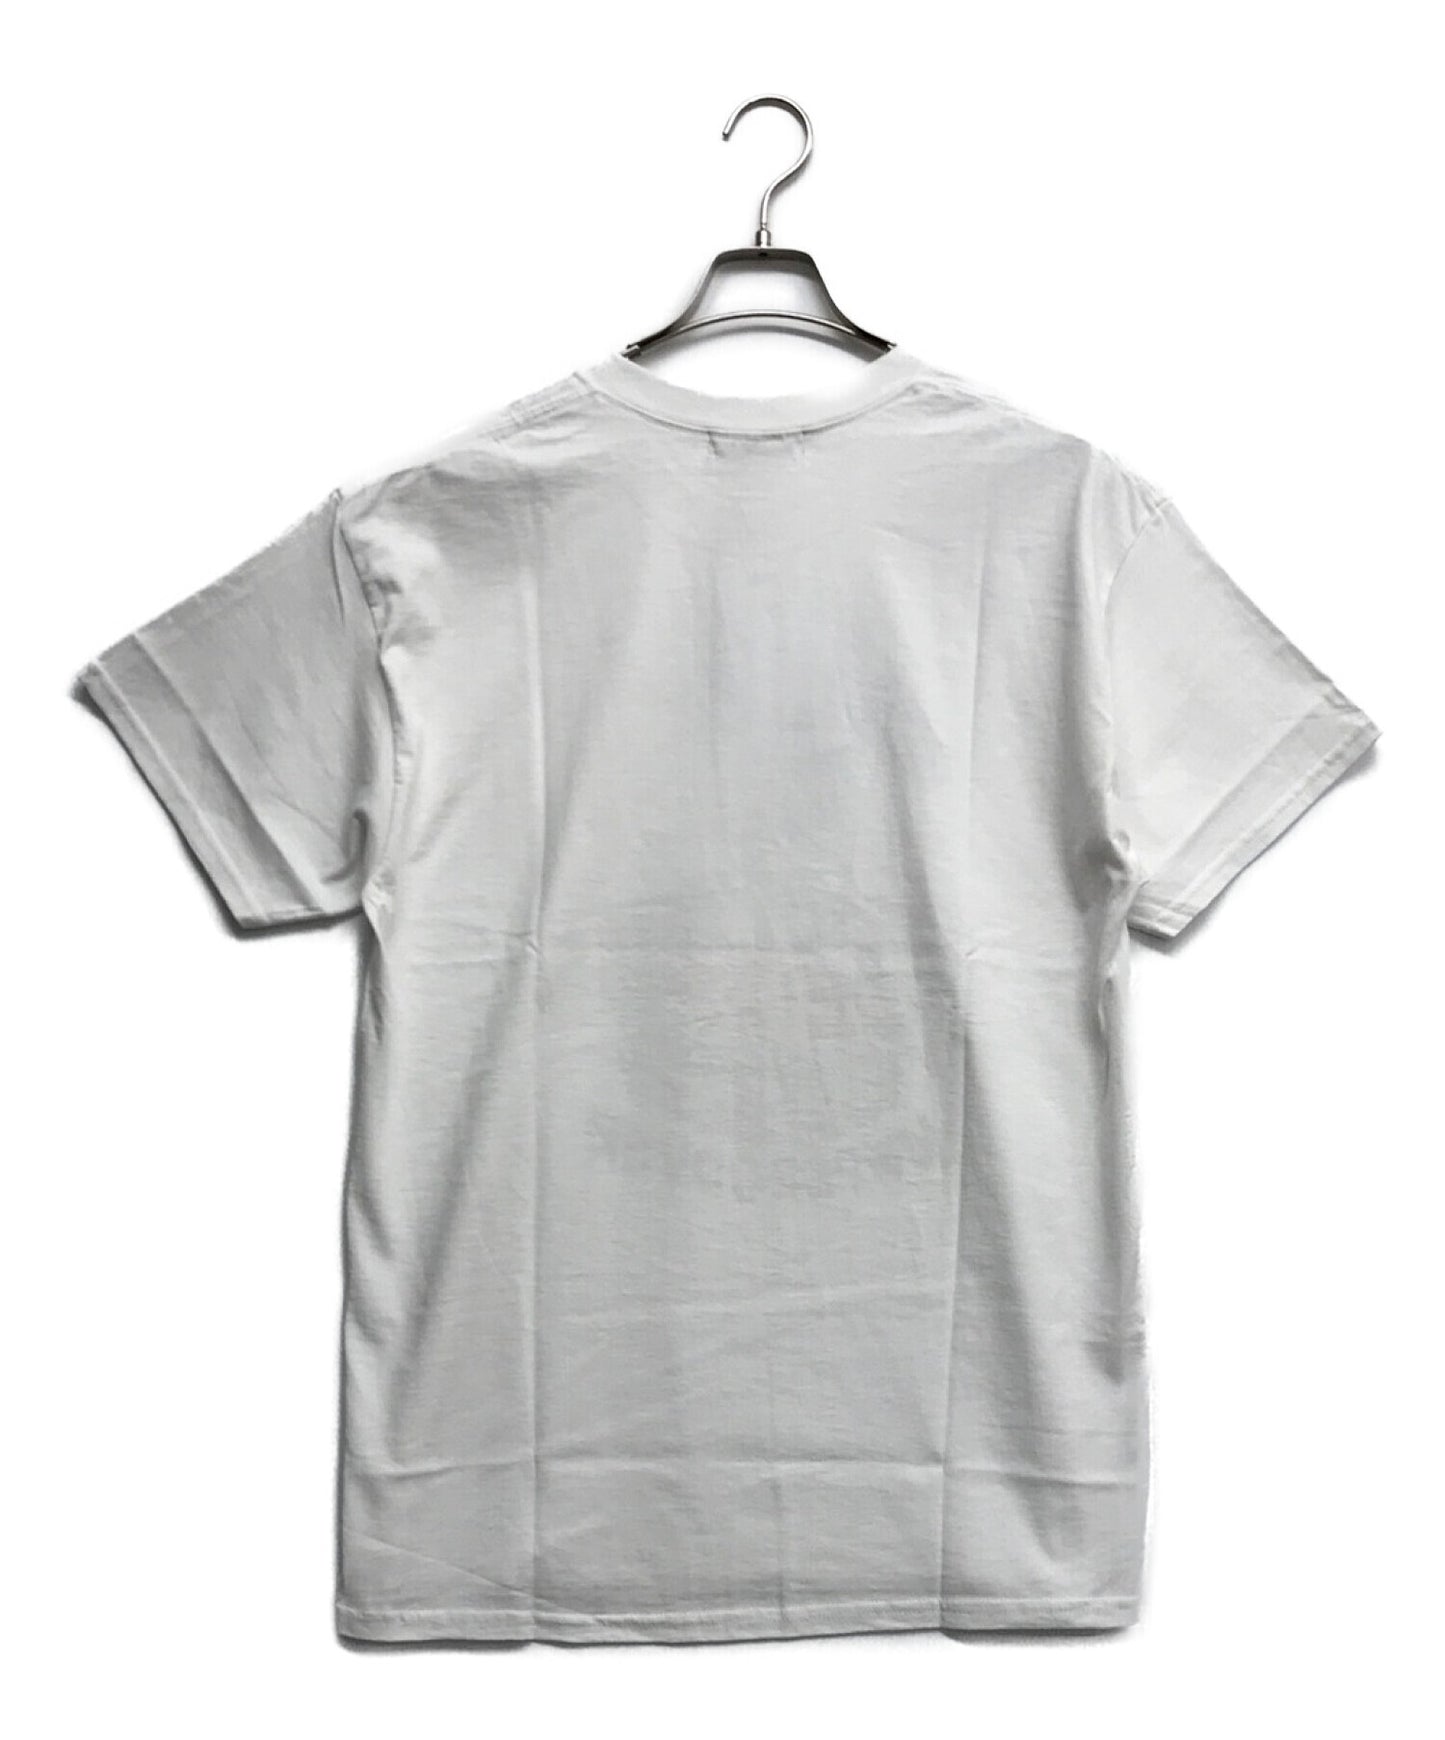 비밀 협력 인쇄 티셔츠 인쇄 티셔츠 짧은 슬리브 티셔츠 티셔츠 UC2B9816